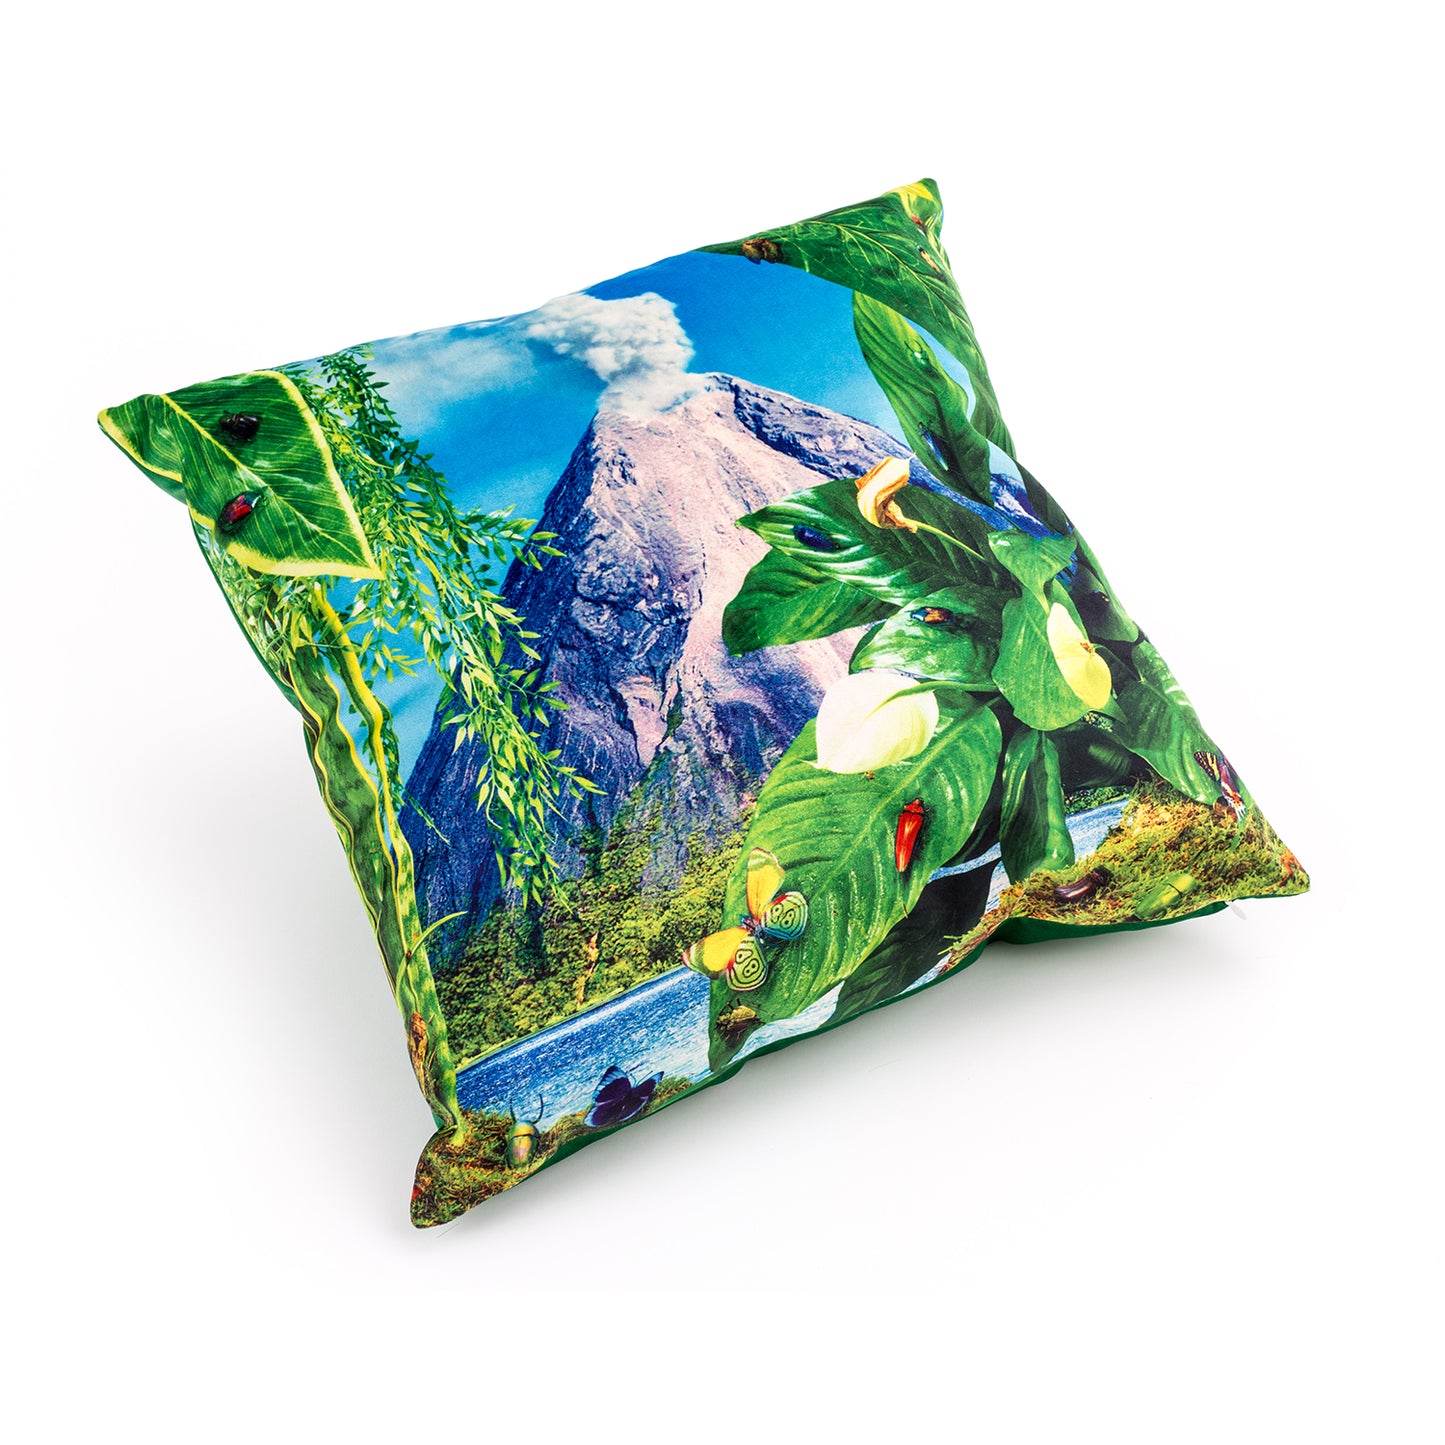 Volcano Cushion Cover - Multicolour